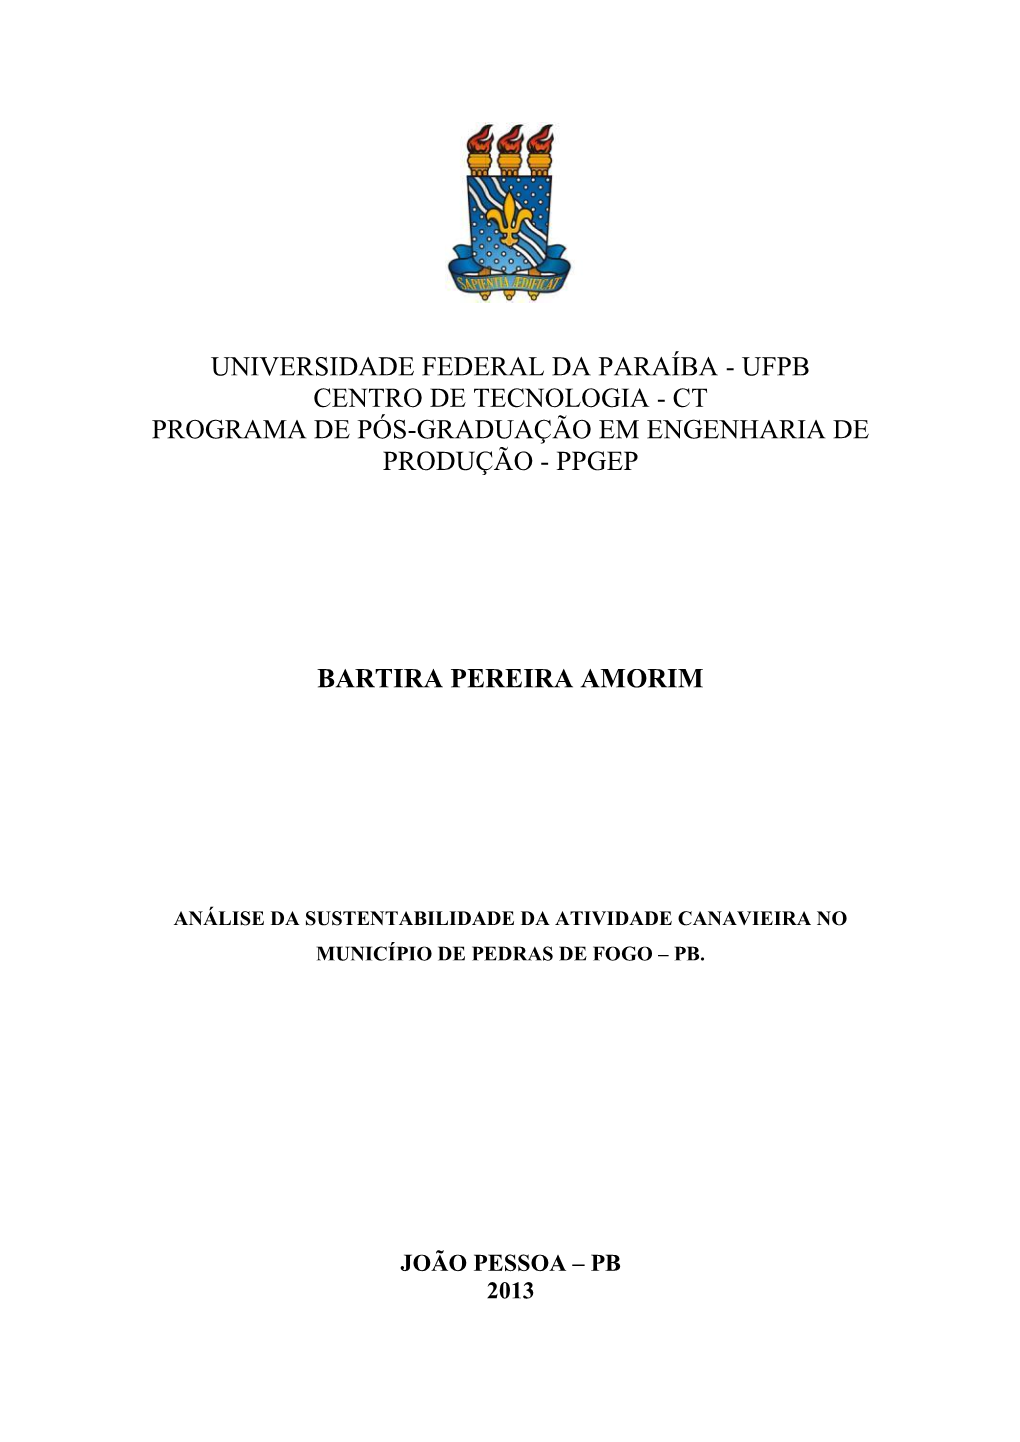 Universidade Federal Da Paraíba - Ufpb Centro De Tecnologia - Ct Programa De Pós-Graduação Em Engenharia De Produção - Ppgep